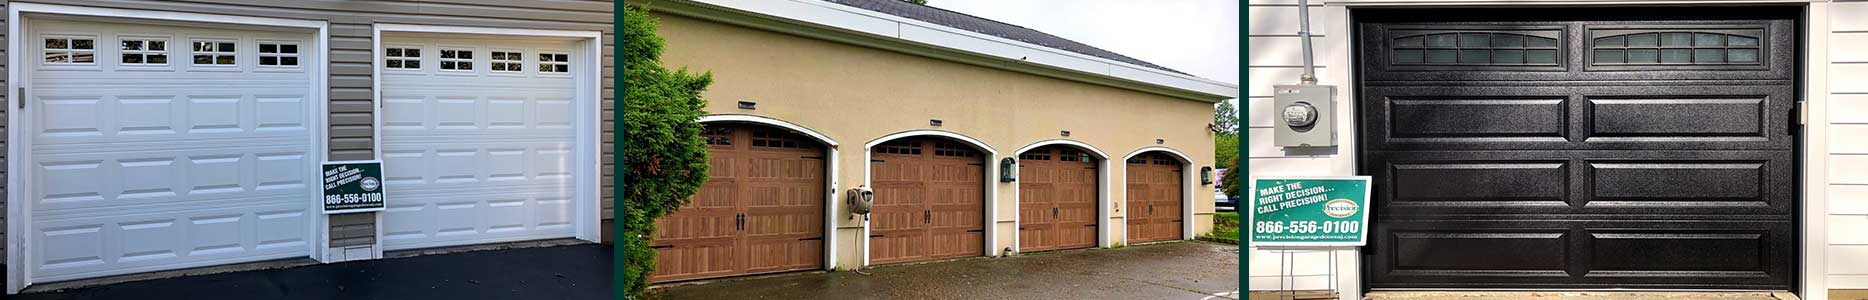 New Garage Door Installation Replacement, Service Plus Garage Doors Knoxville